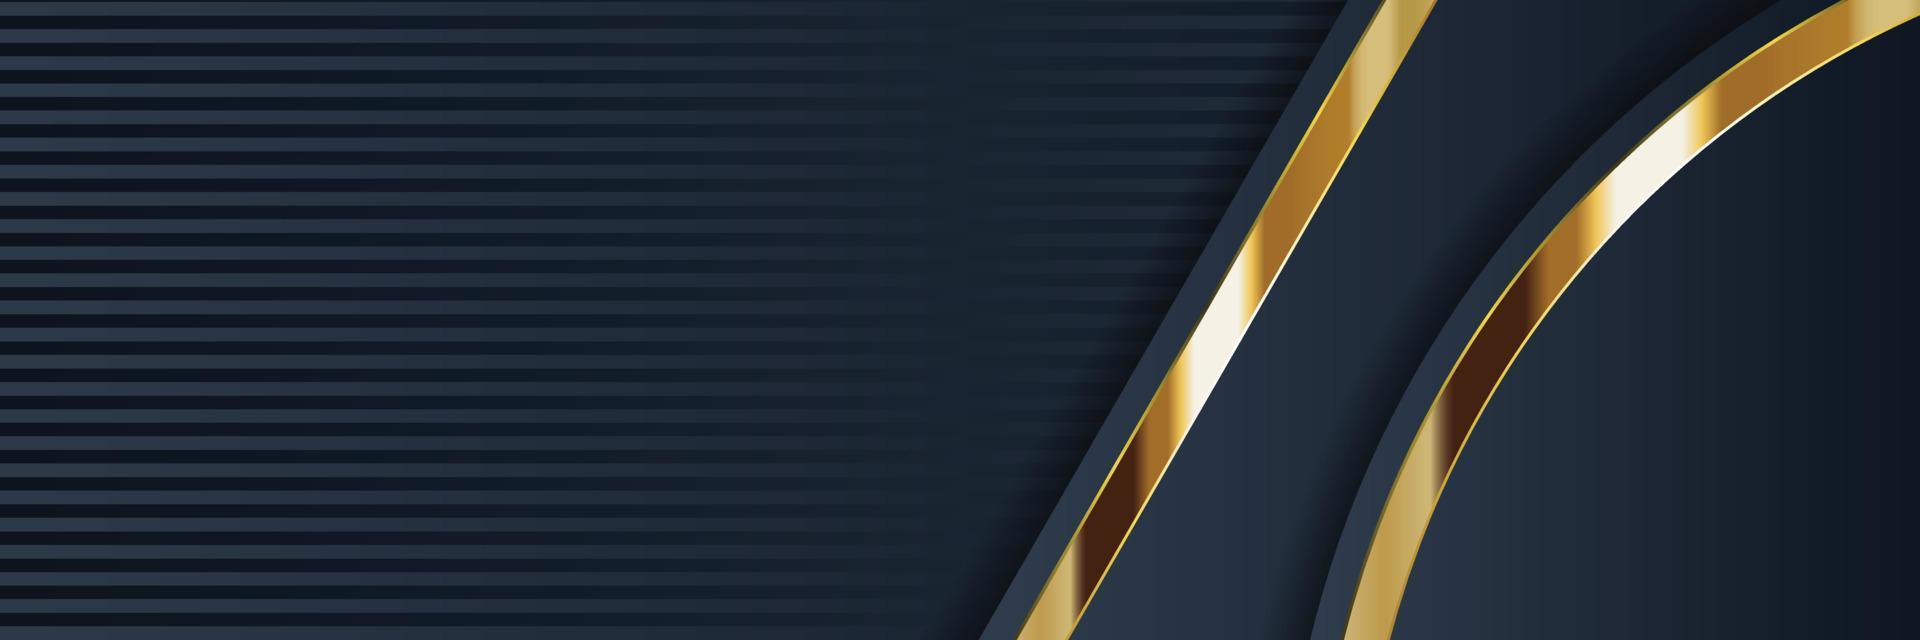 design banner oro con lusso oro minimalista in stile moderno vettore